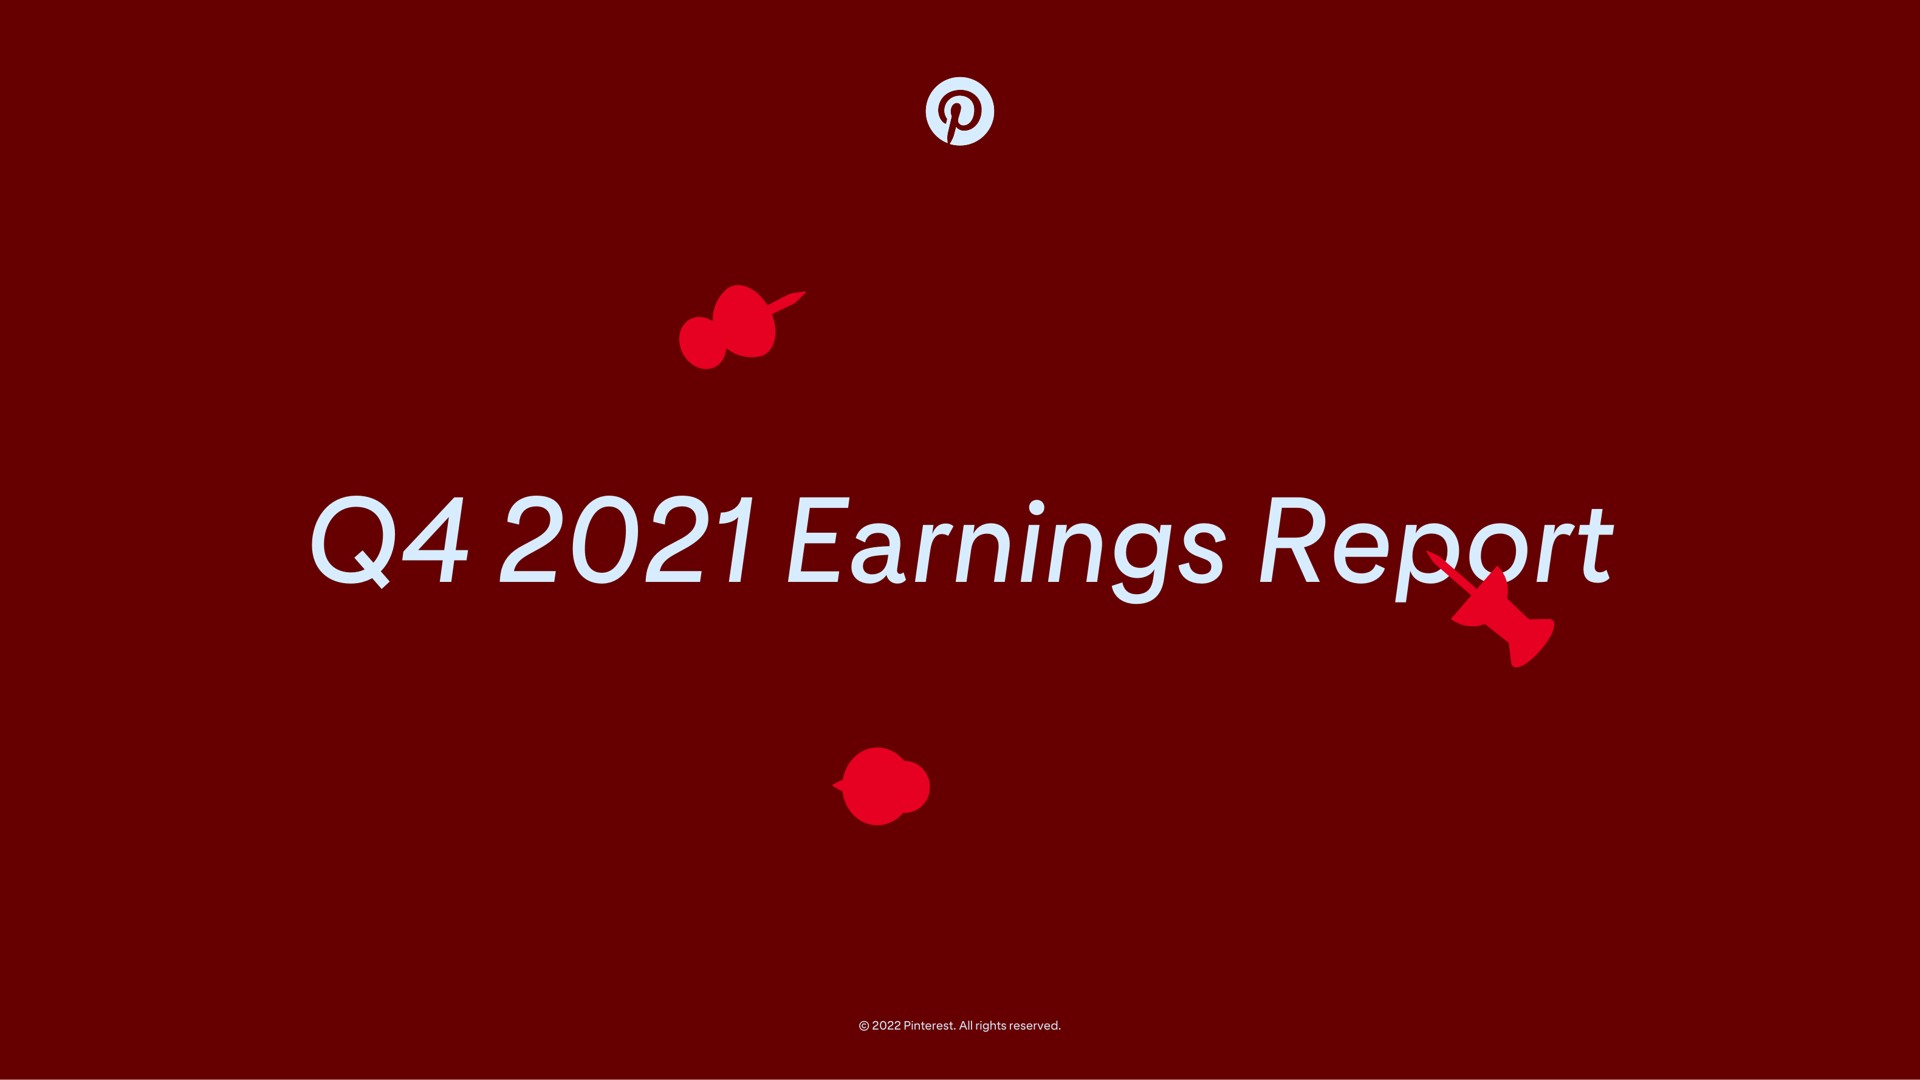 earnings report | Pinterest